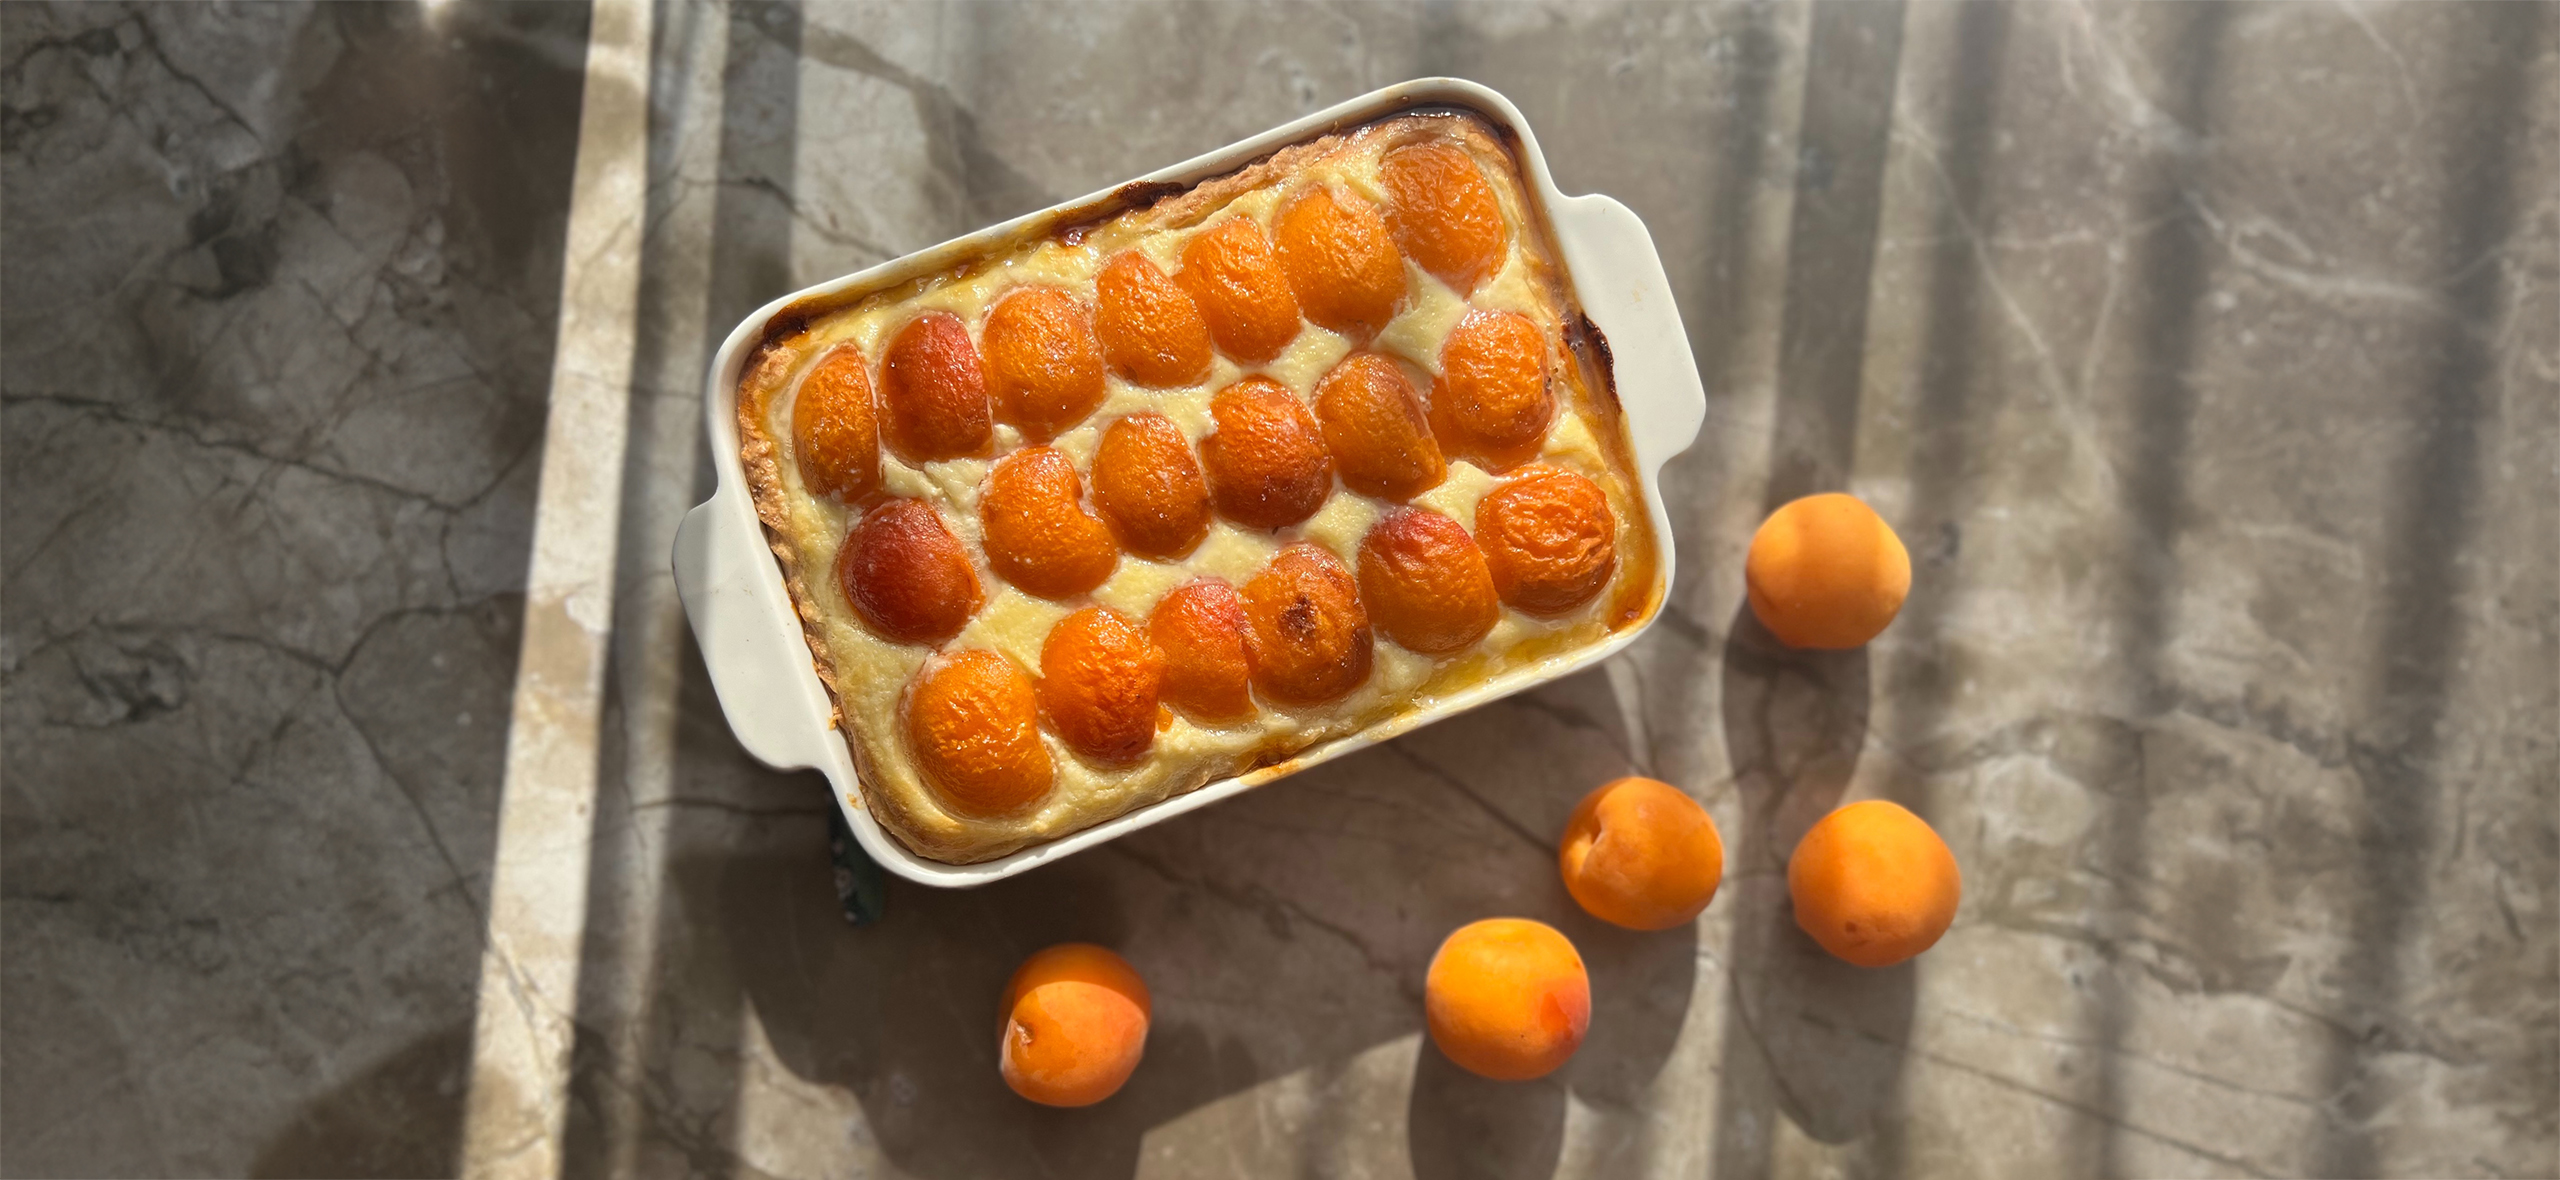 Рецепт пирога с абри­косами и нежной творожной начинкой